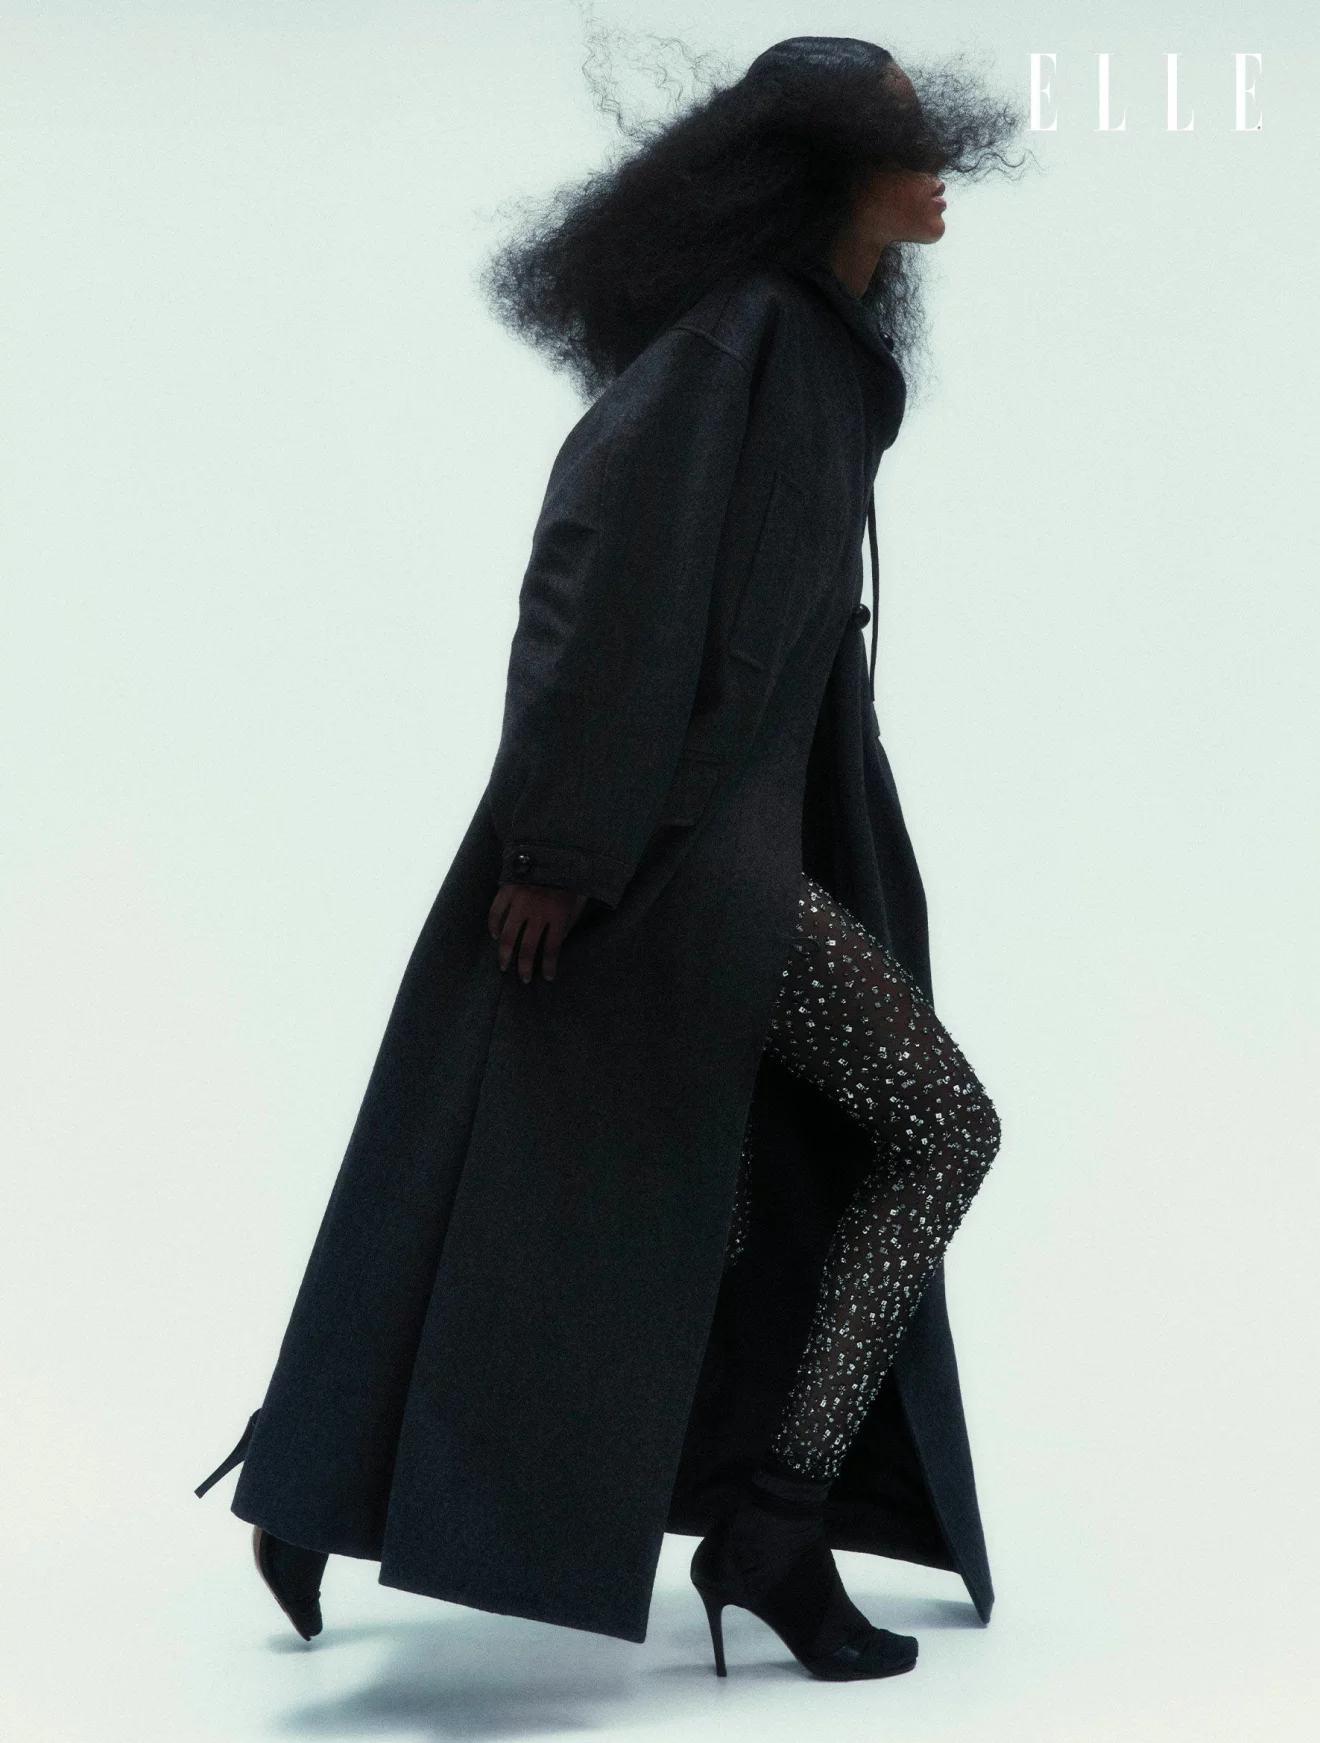 Modellen har på sig en svart kappa och byxor med strass, båda från Isabel Marant